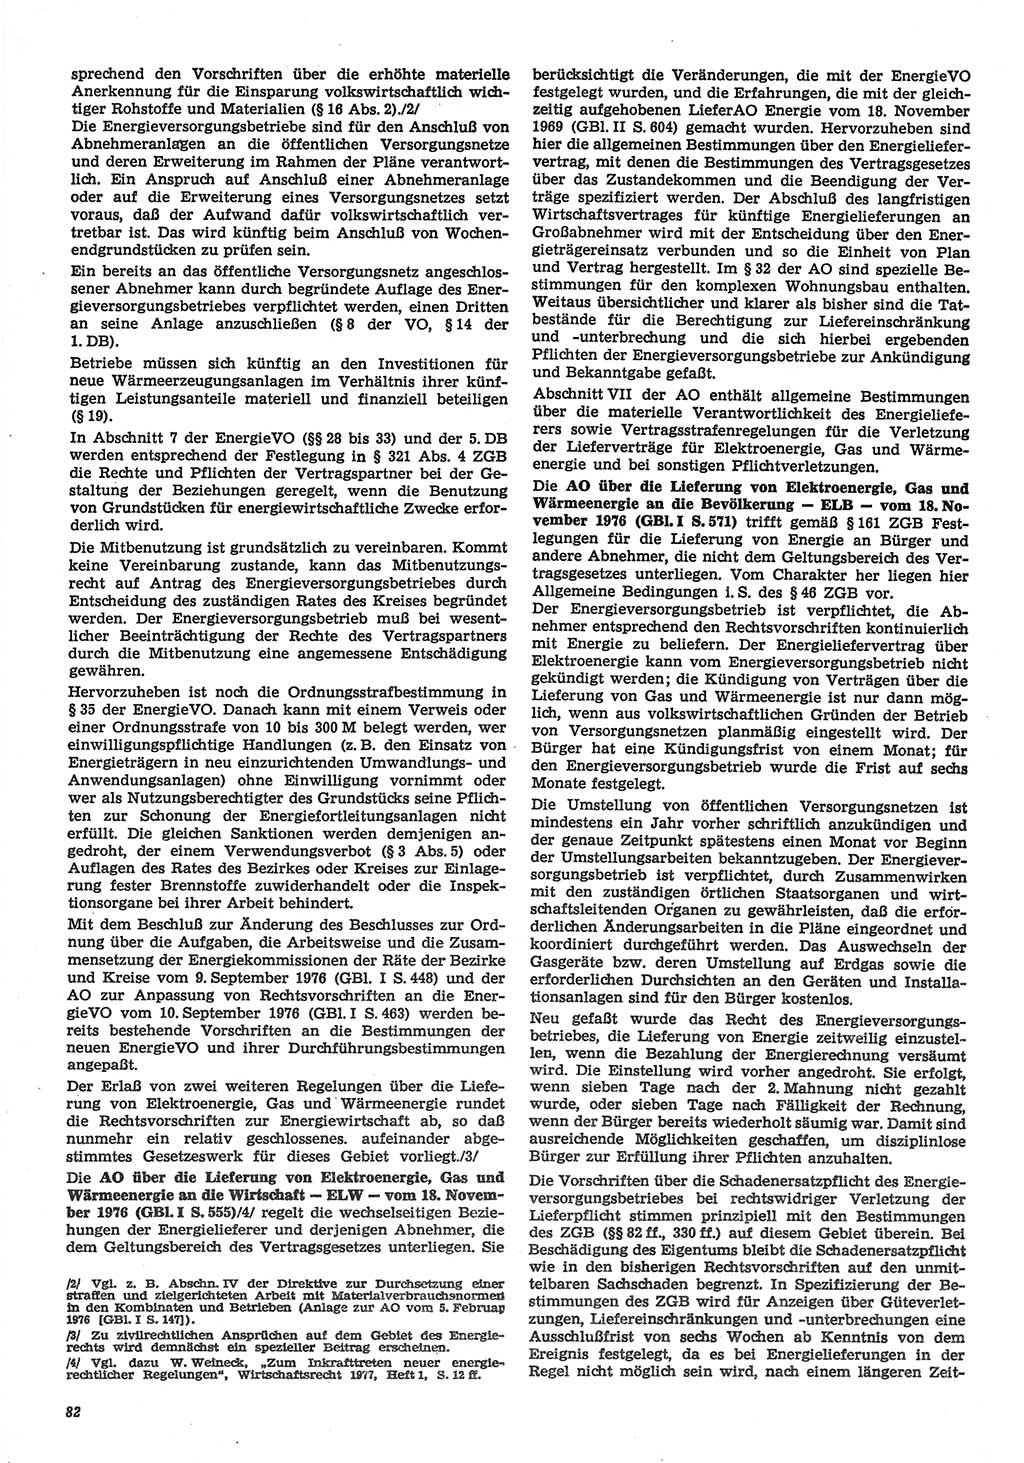 Neue Justiz (NJ), Zeitschrift für Recht und Rechtswissenschaft-Zeitschrift, sozialistisches Recht und Gesetzlichkeit, 31. Jahrgang 1977, Seite 82 (NJ DDR 1977, S. 82)